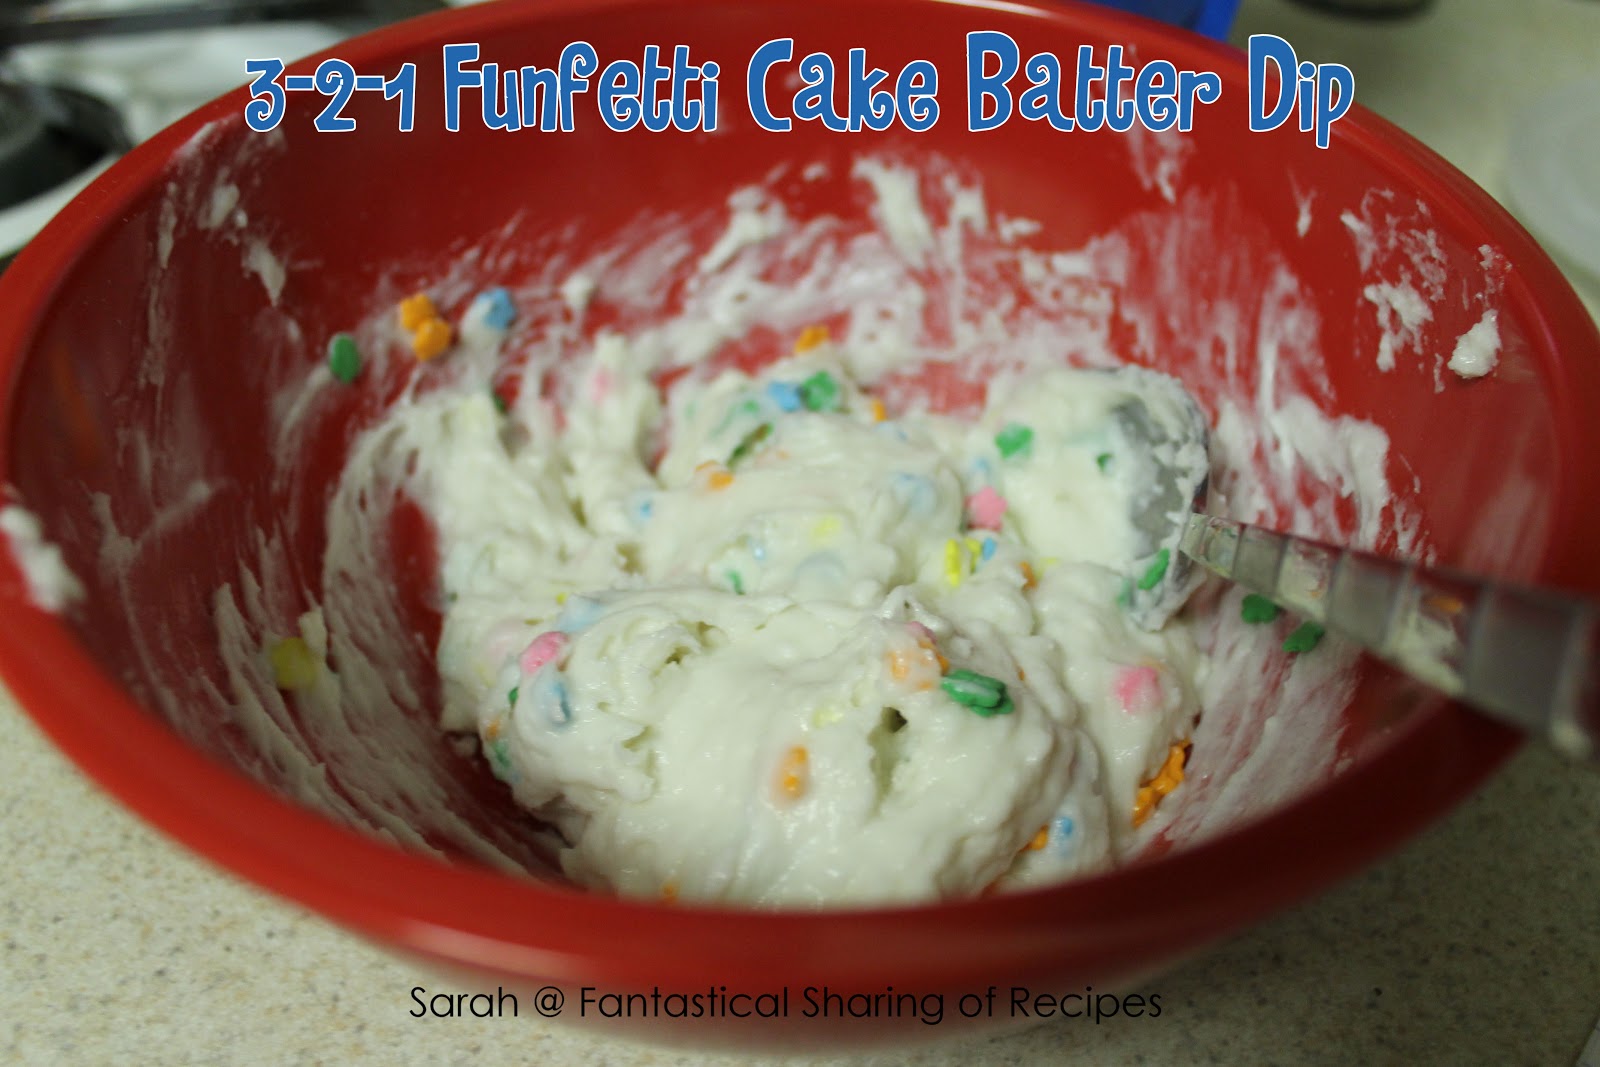 Fantastical Sharing of Recipes: 3-2-1 Funfetti Cake Batter Dip1600 x 1067